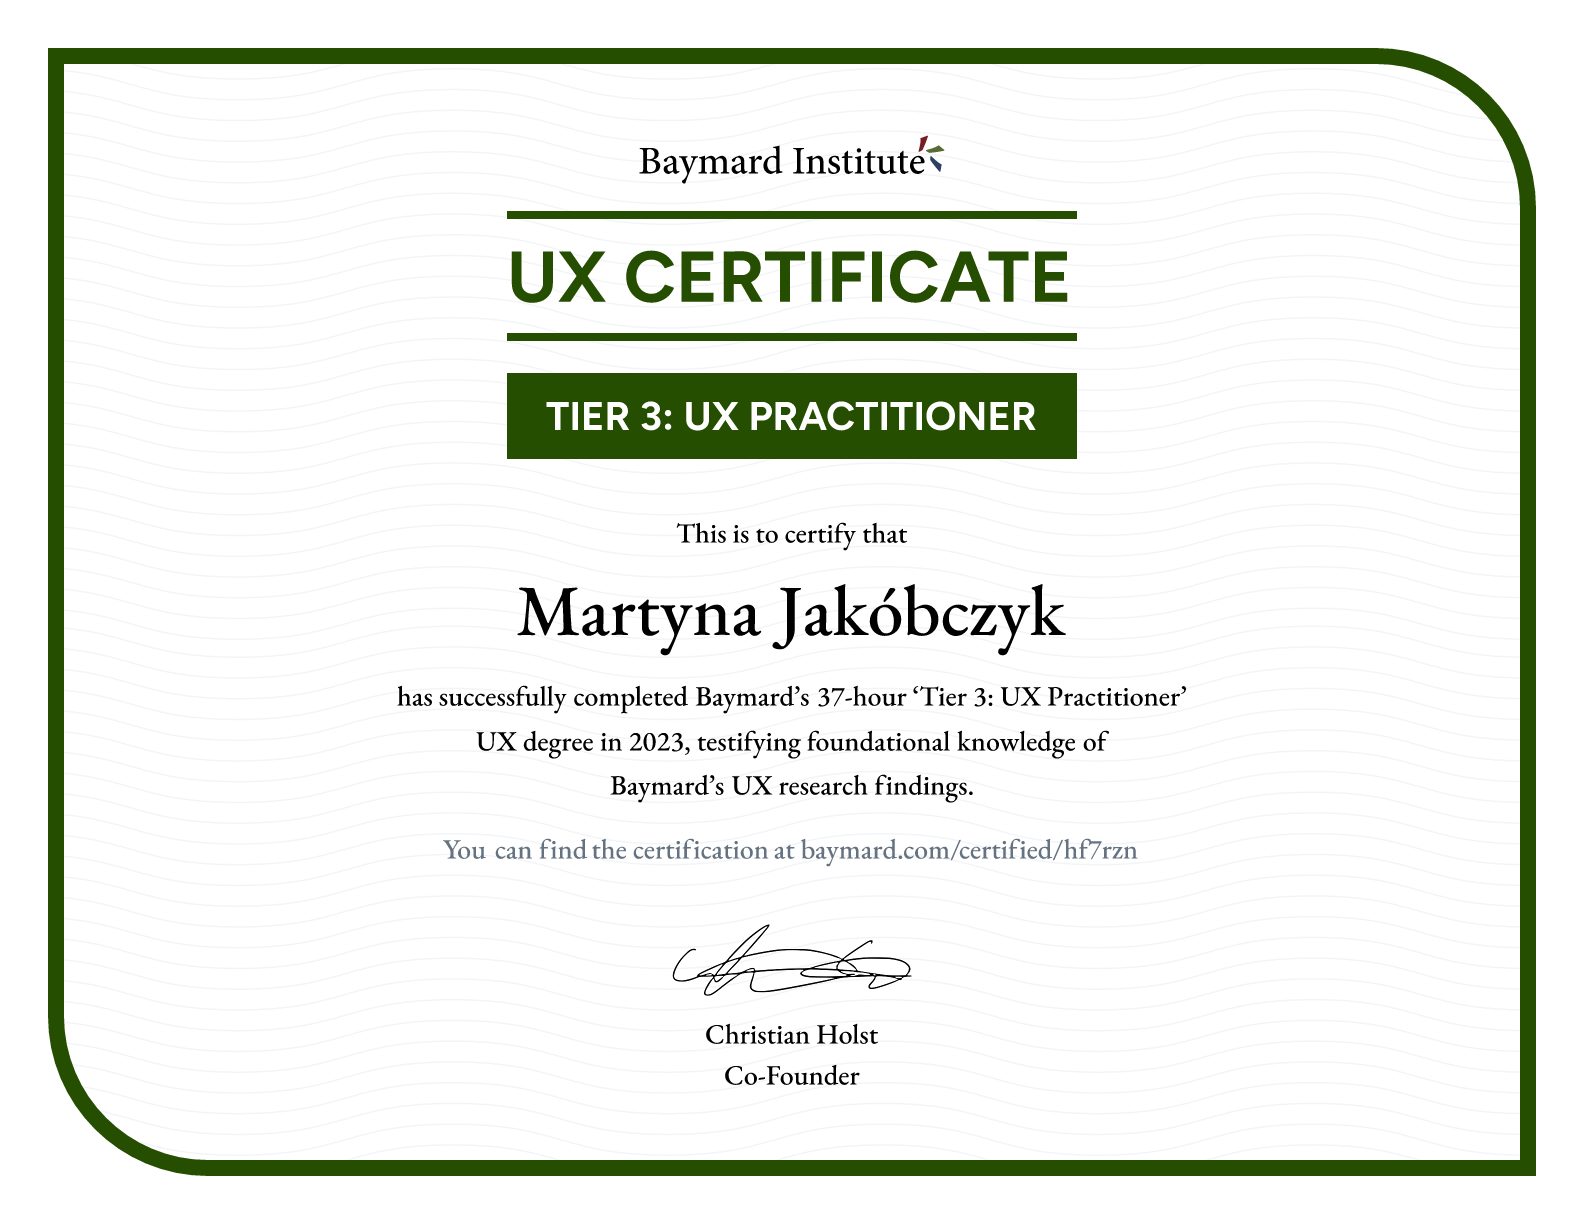 Martyna Jakóbczyk’s certificate